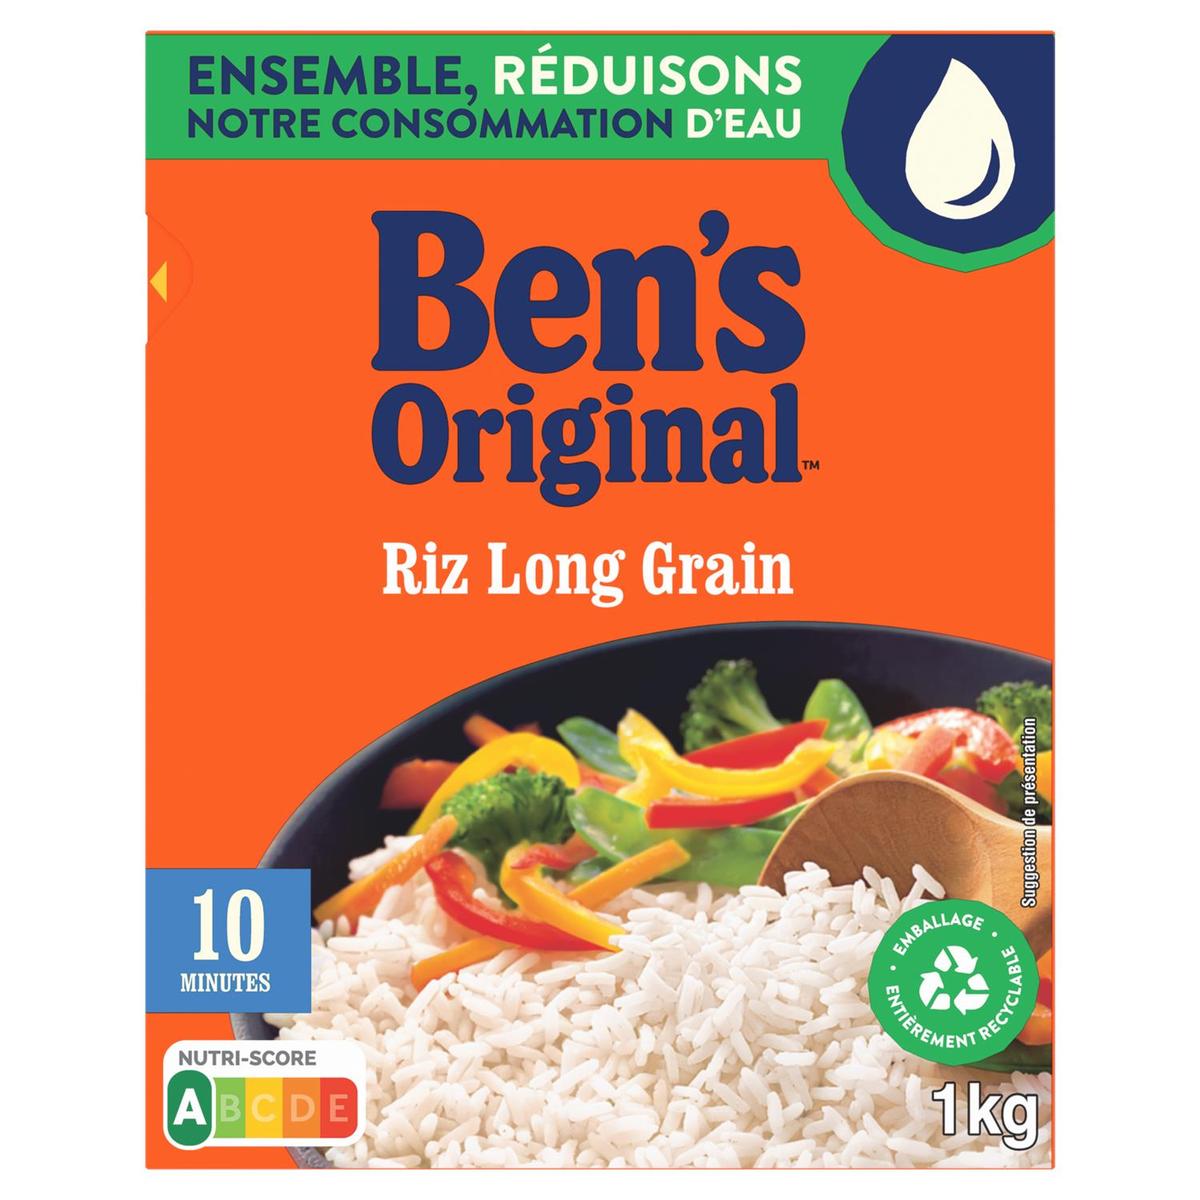 Lot de 6 riz cuisinés classique Ben's Original - Ben's Original